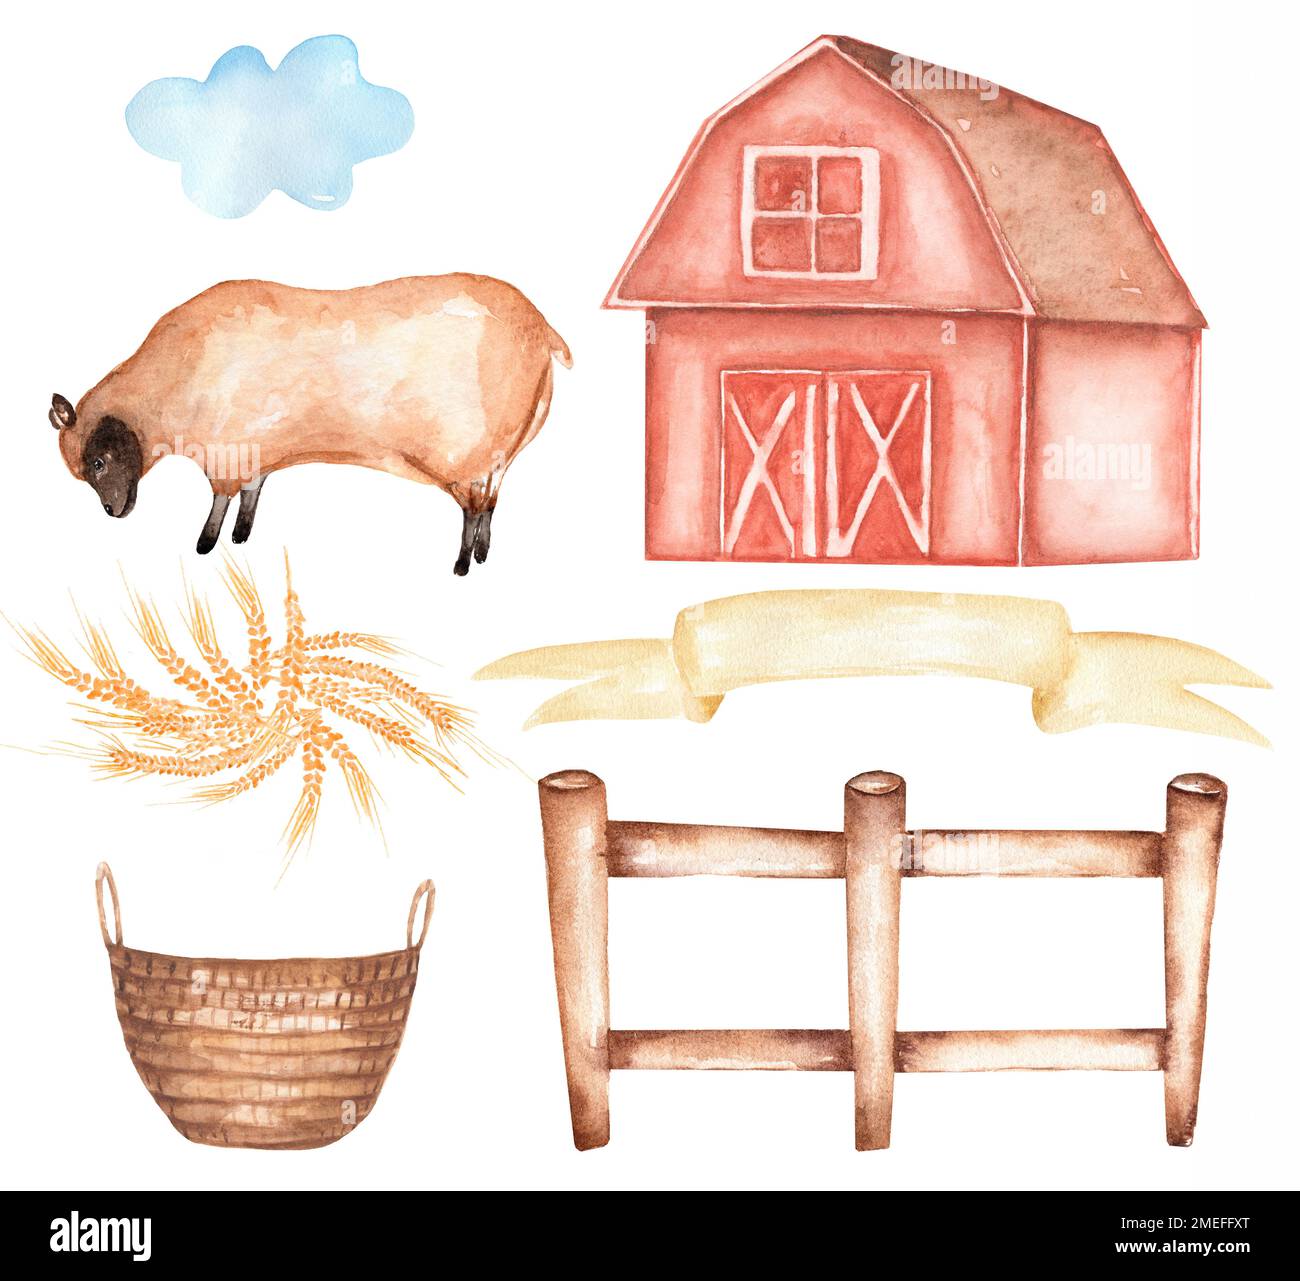 Bauernhoftiere Clipart, Wasserfarbe, handgezeichnete Schafsklemme, süße Illustration, Scheunenklemme, Dorfset Stockfoto